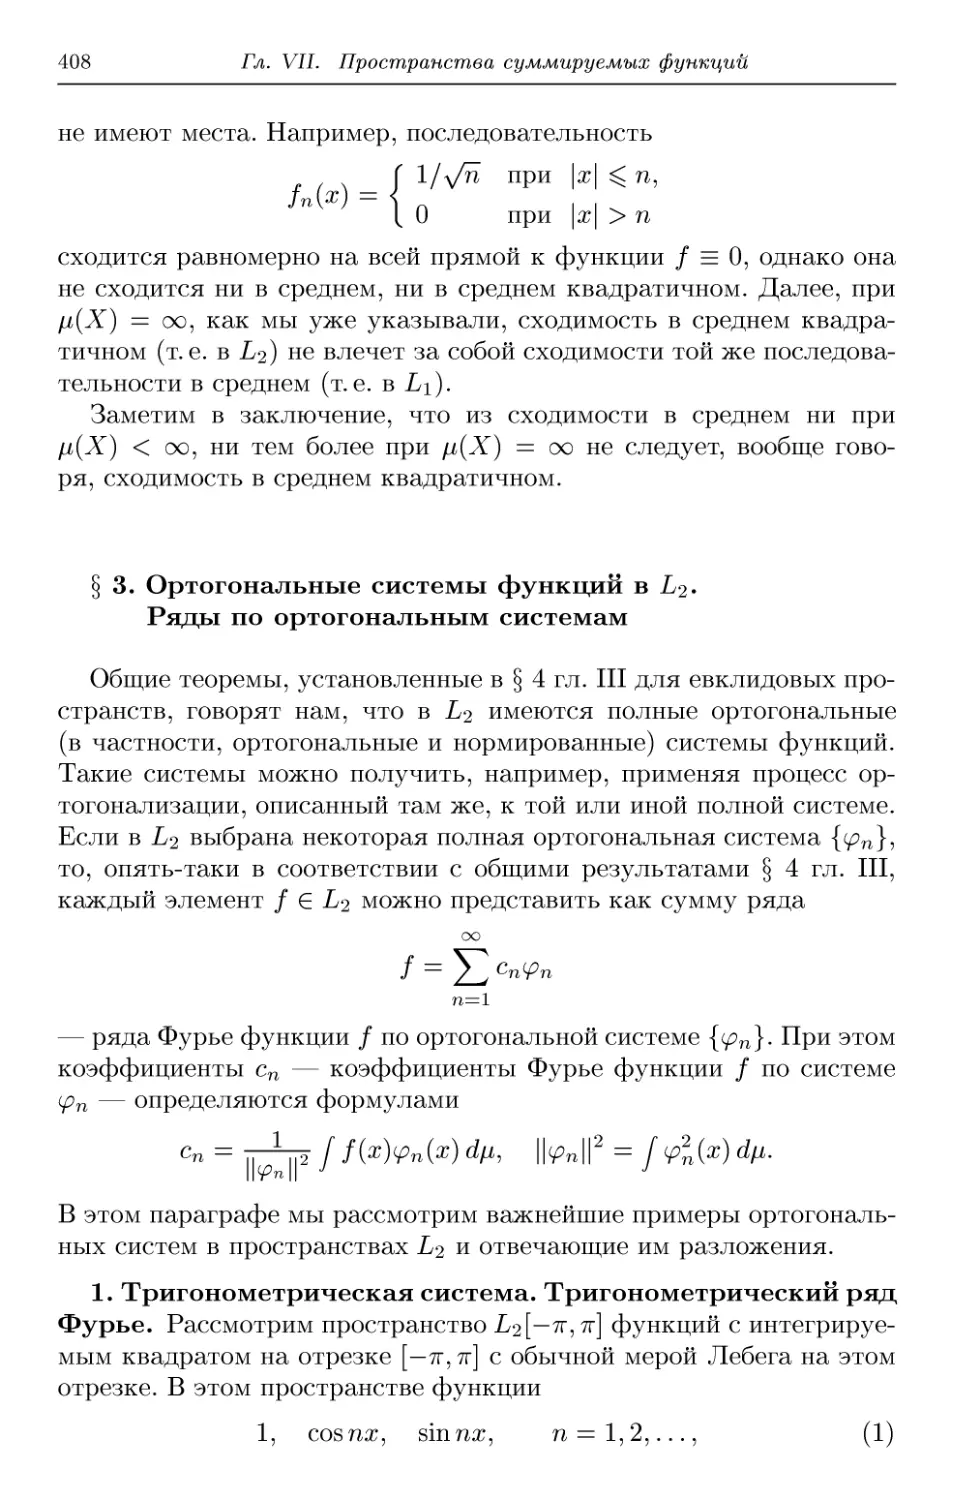 § 3. Ортогональные системы функций в L2. Ряды по ортогональным системам